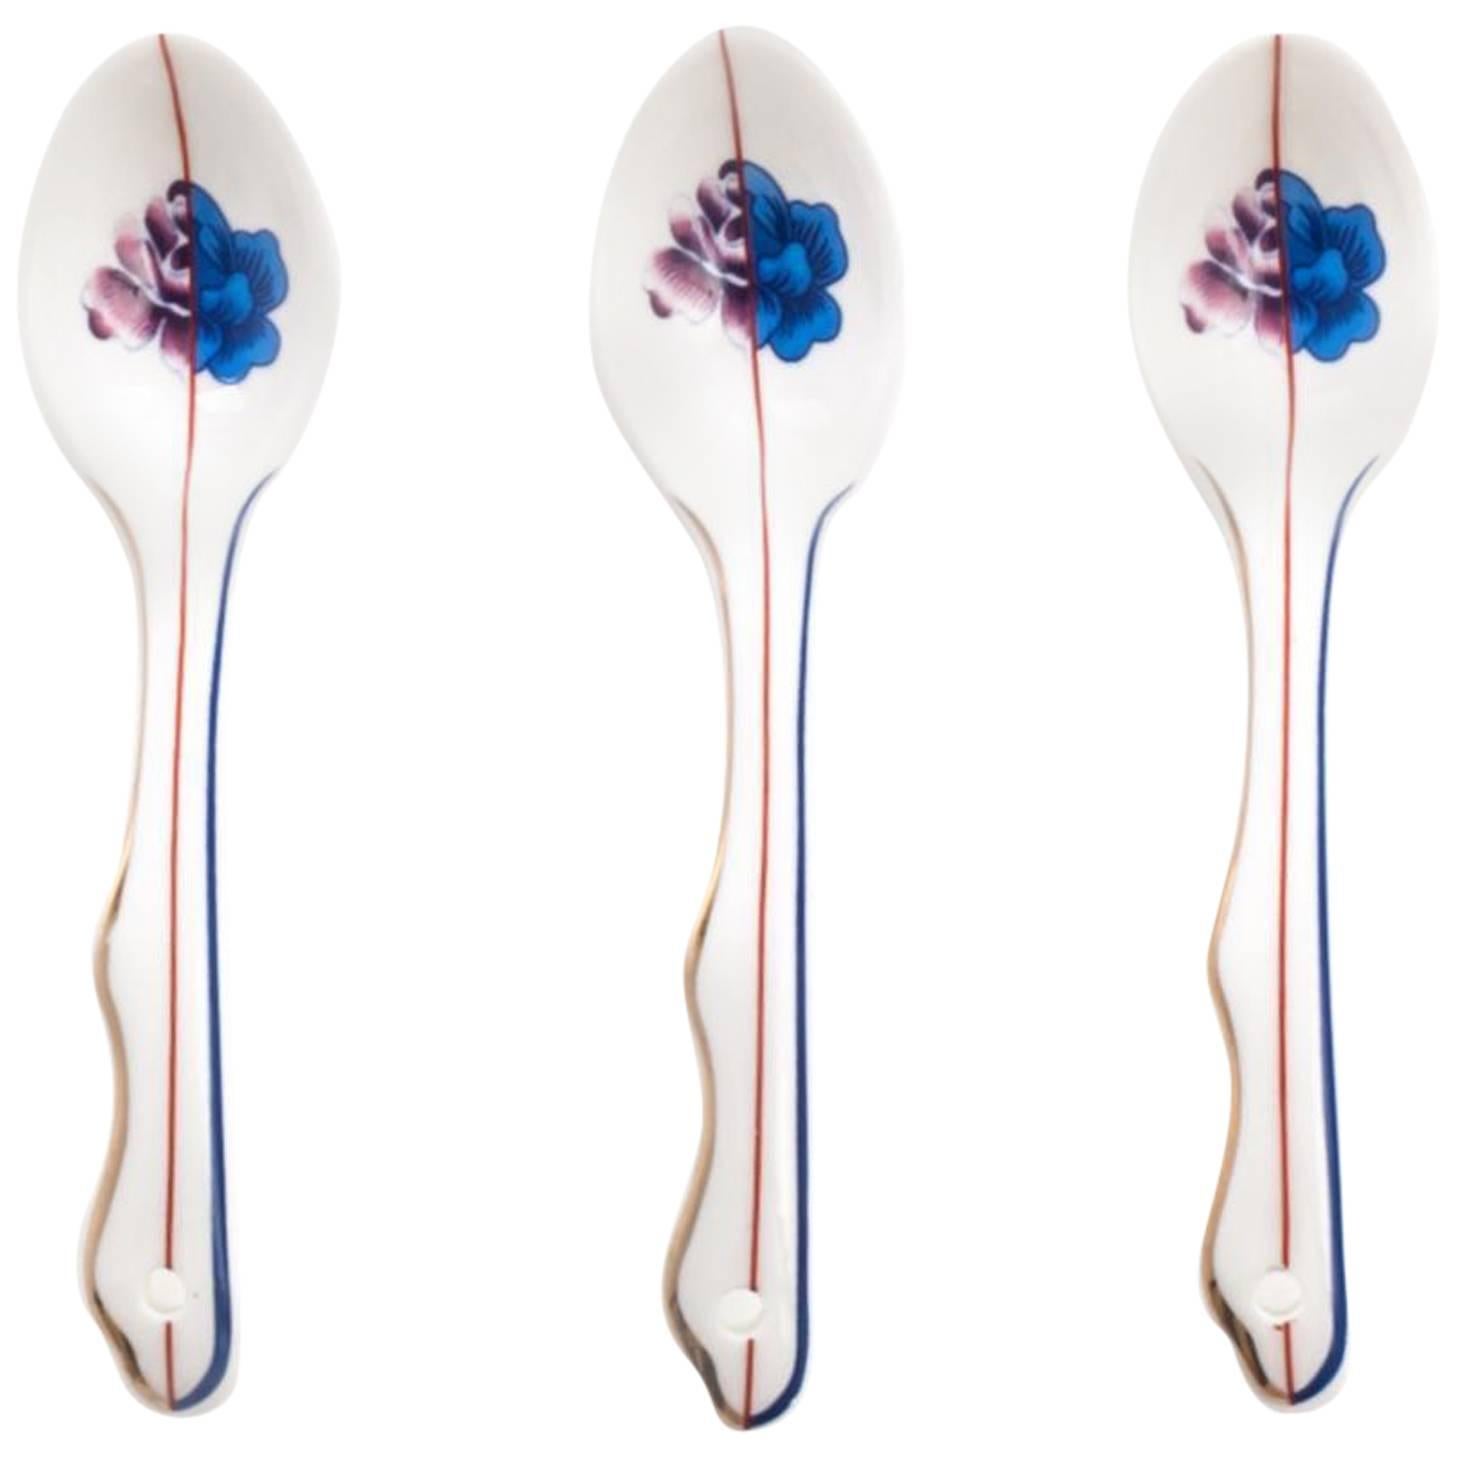 Seletti "Hybrid-Armilla" Porcelain Spoon, Three Pieces